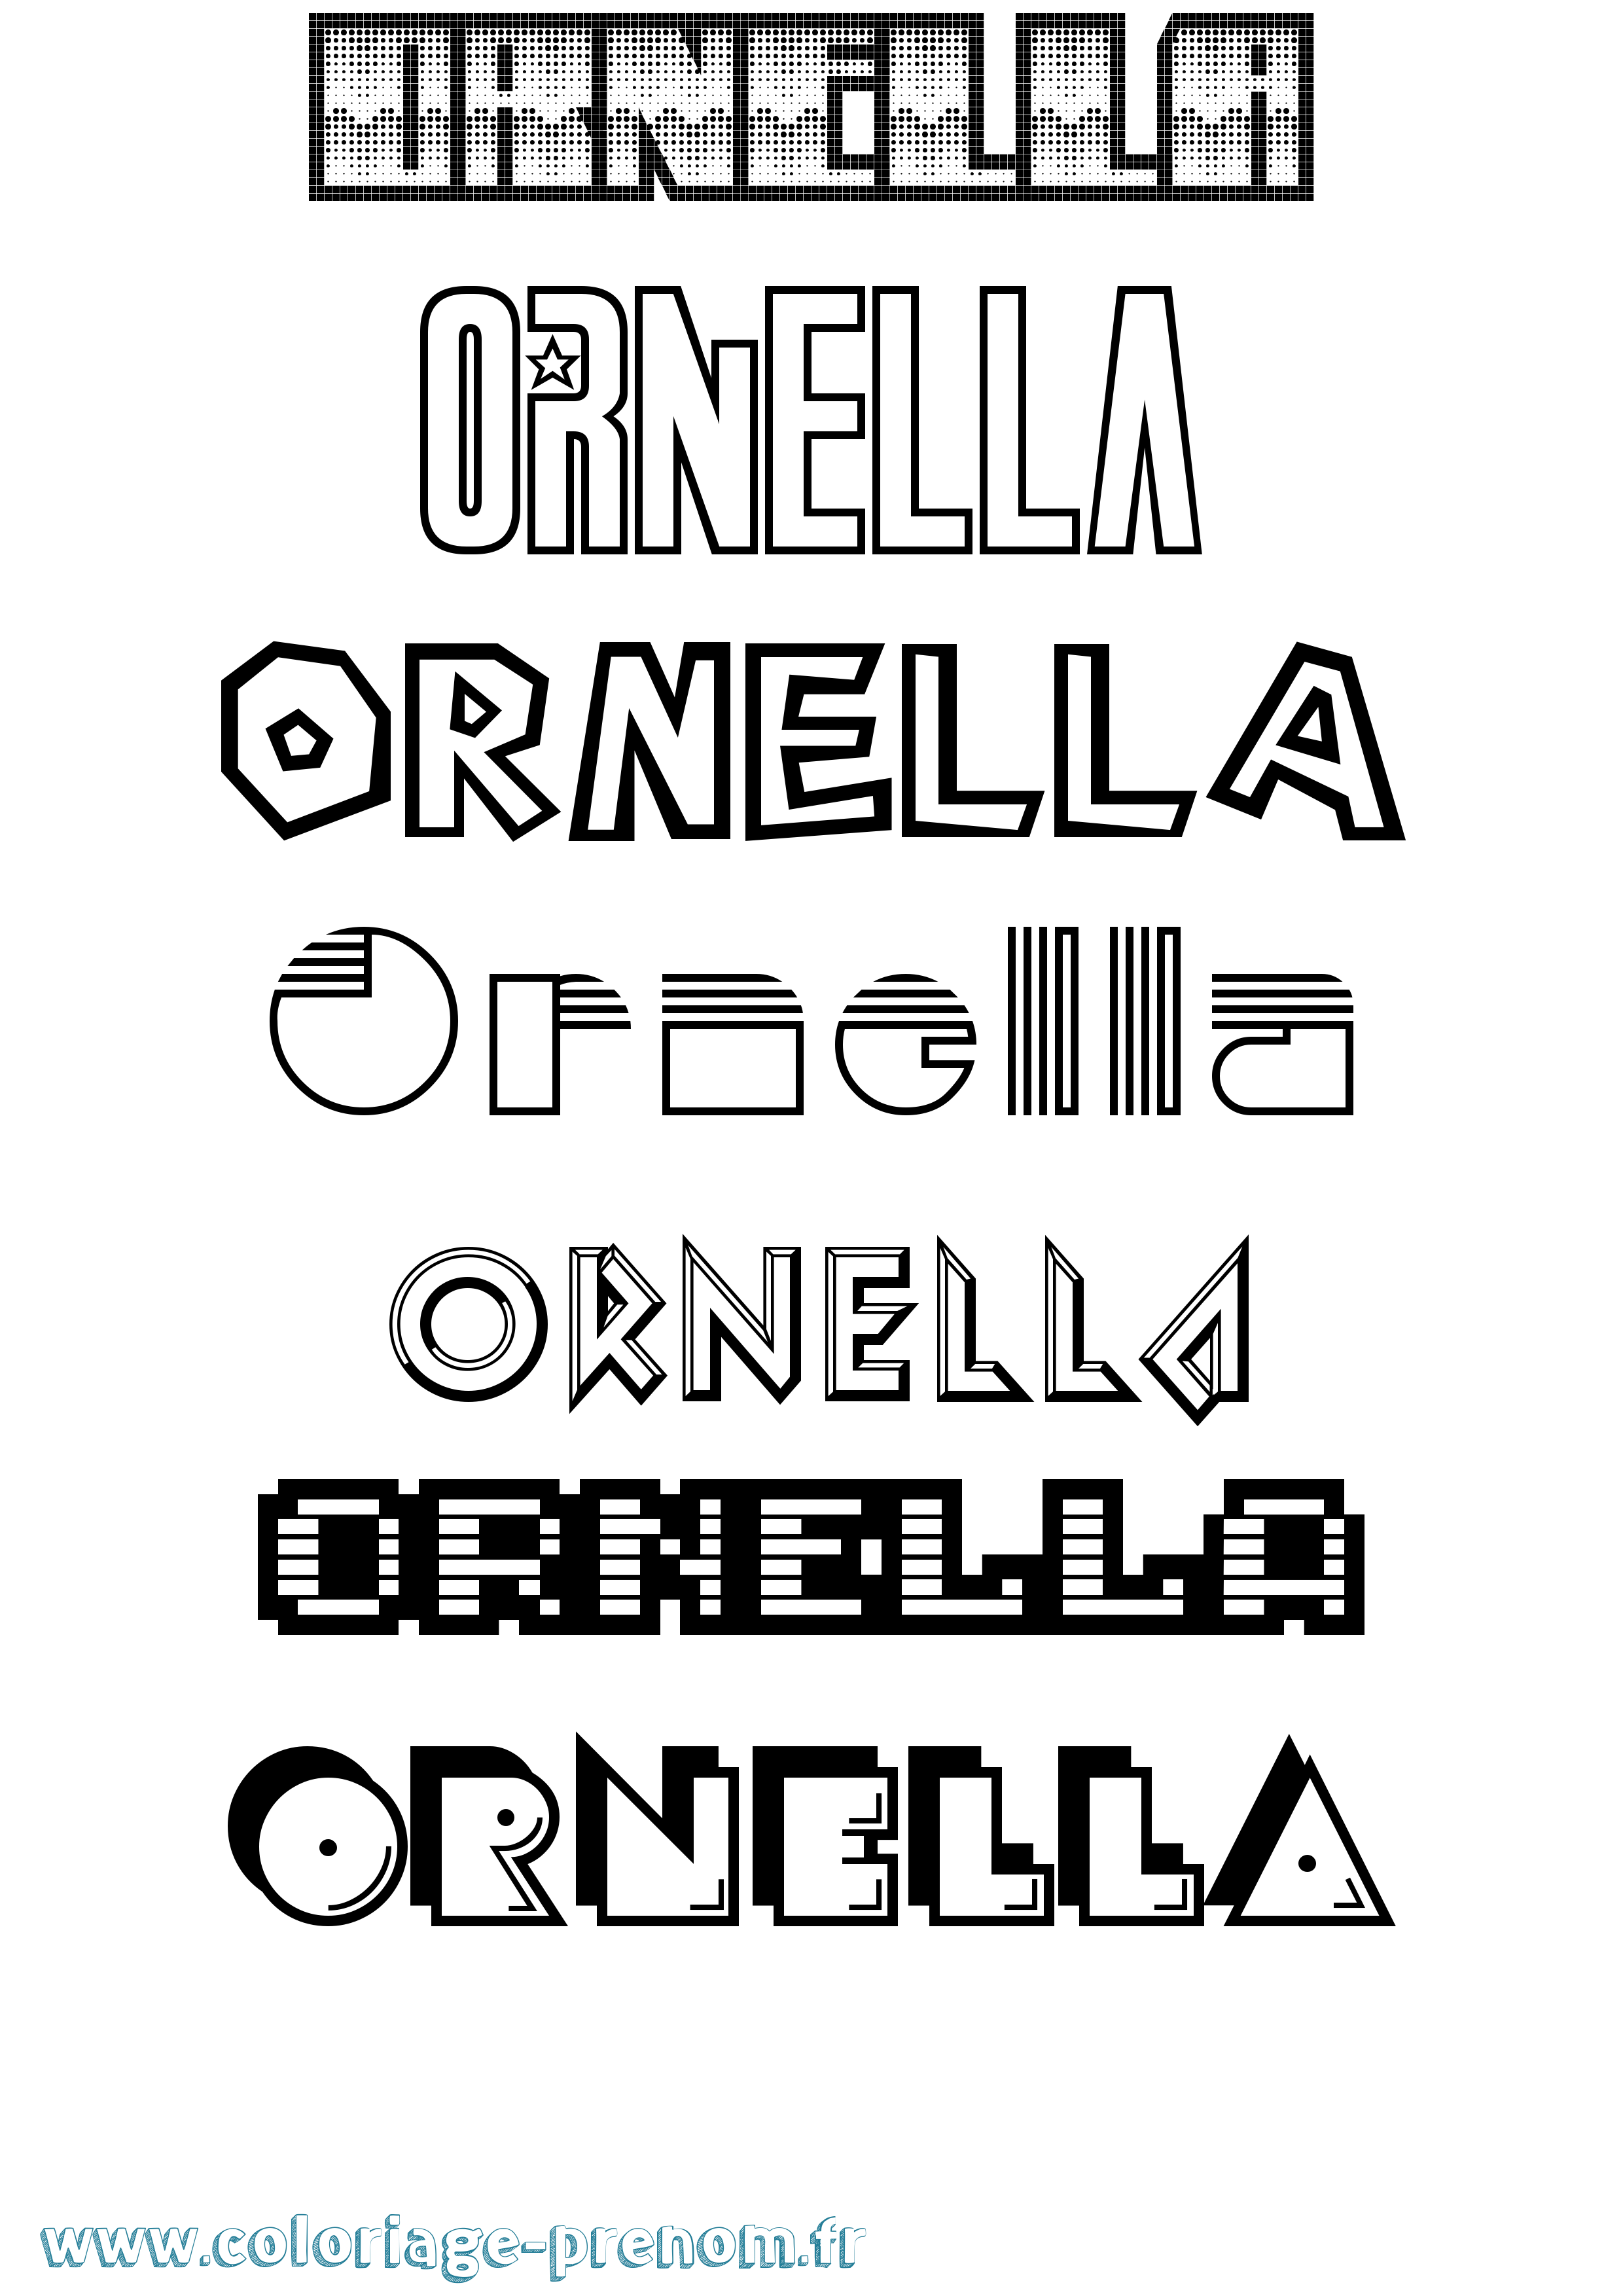 Coloriage prénom Ornella